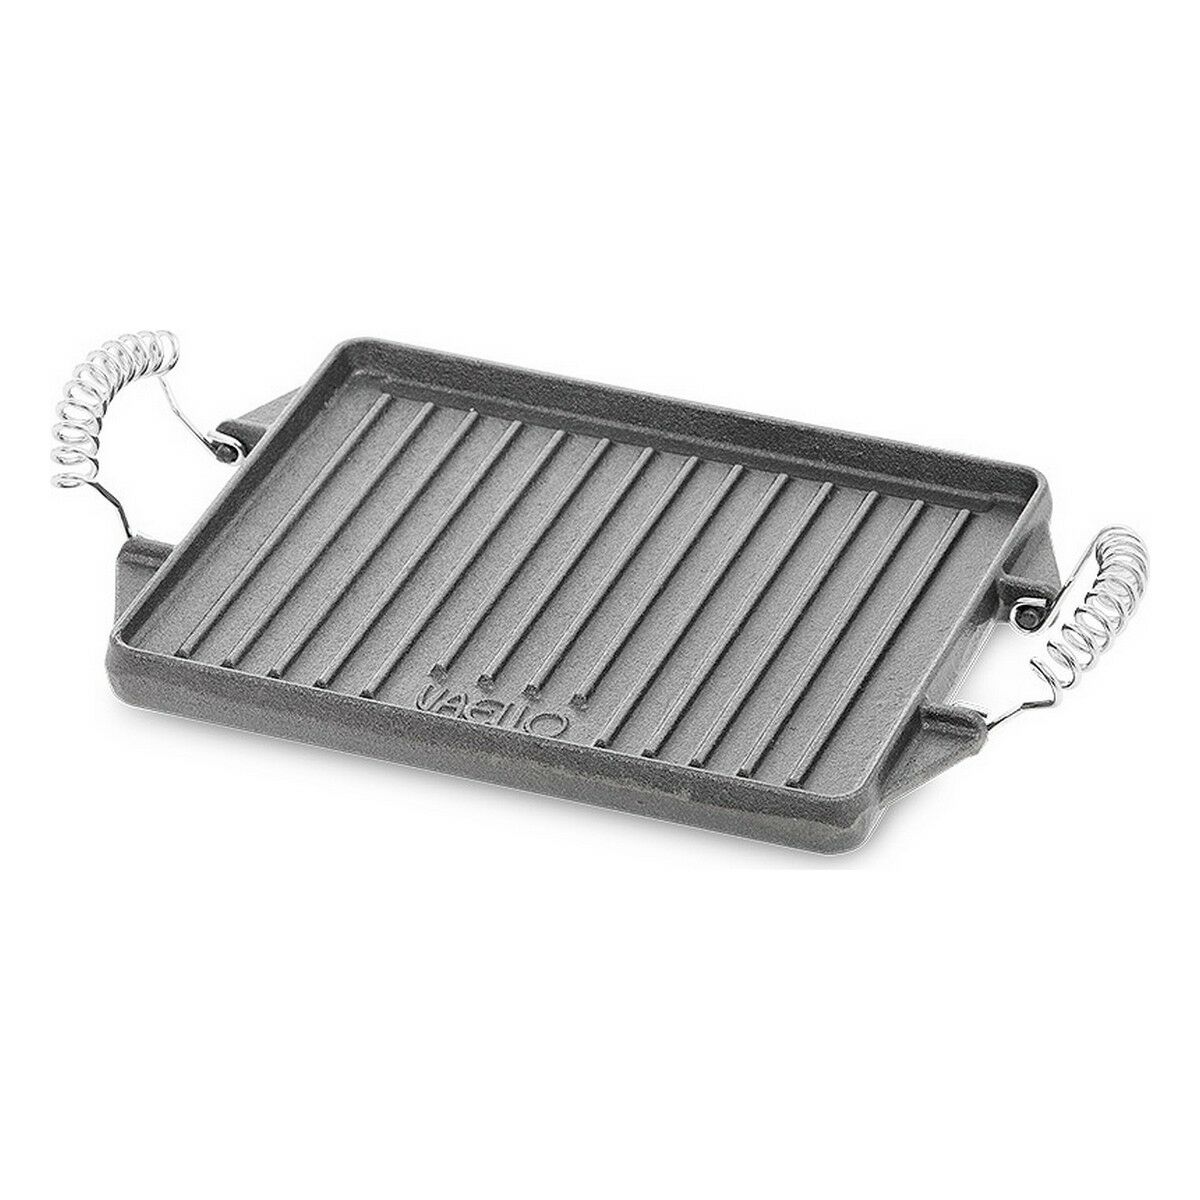 Plancha grill rectangular de hierro fundido - 43 x 24 cm - El